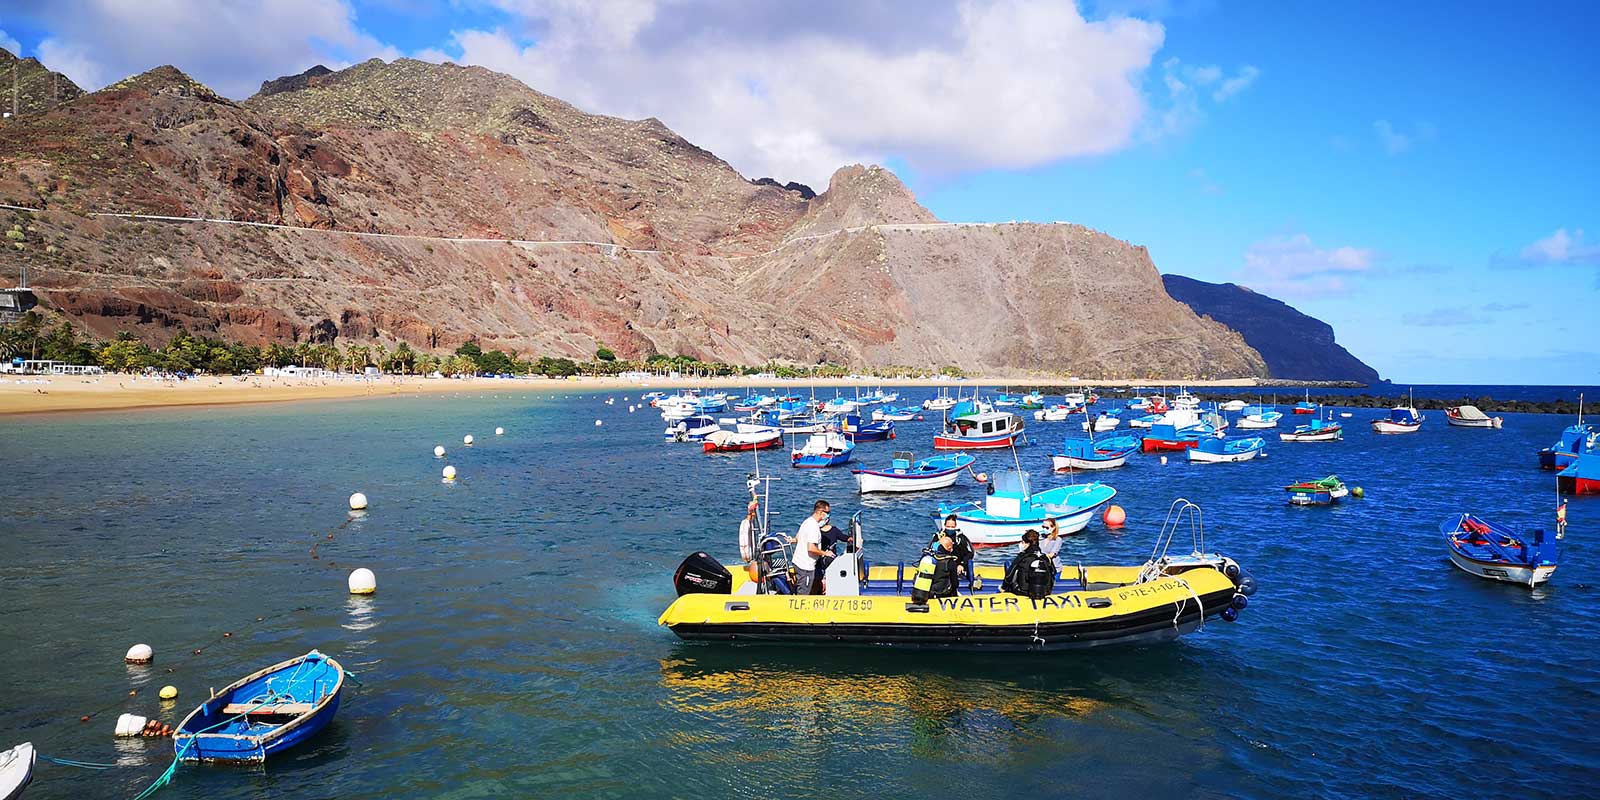 La playa de Las Teresitas es uno de los puntos elegidos en Tenerife para la realización del estudio. DA